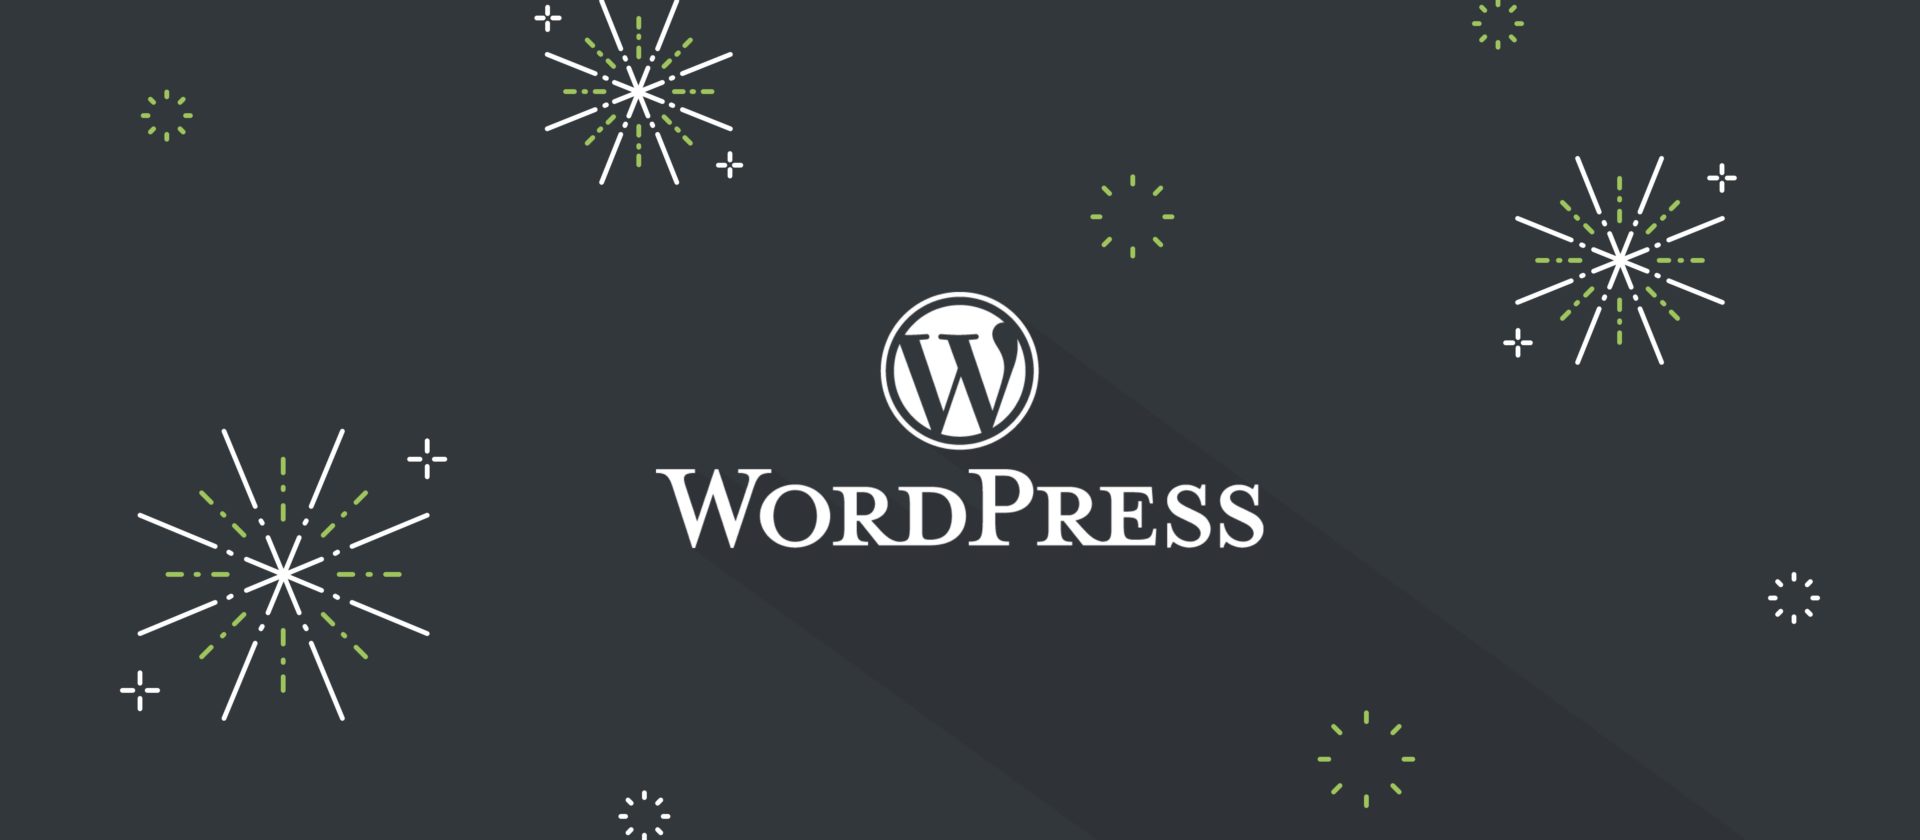 WordPress logo with firework